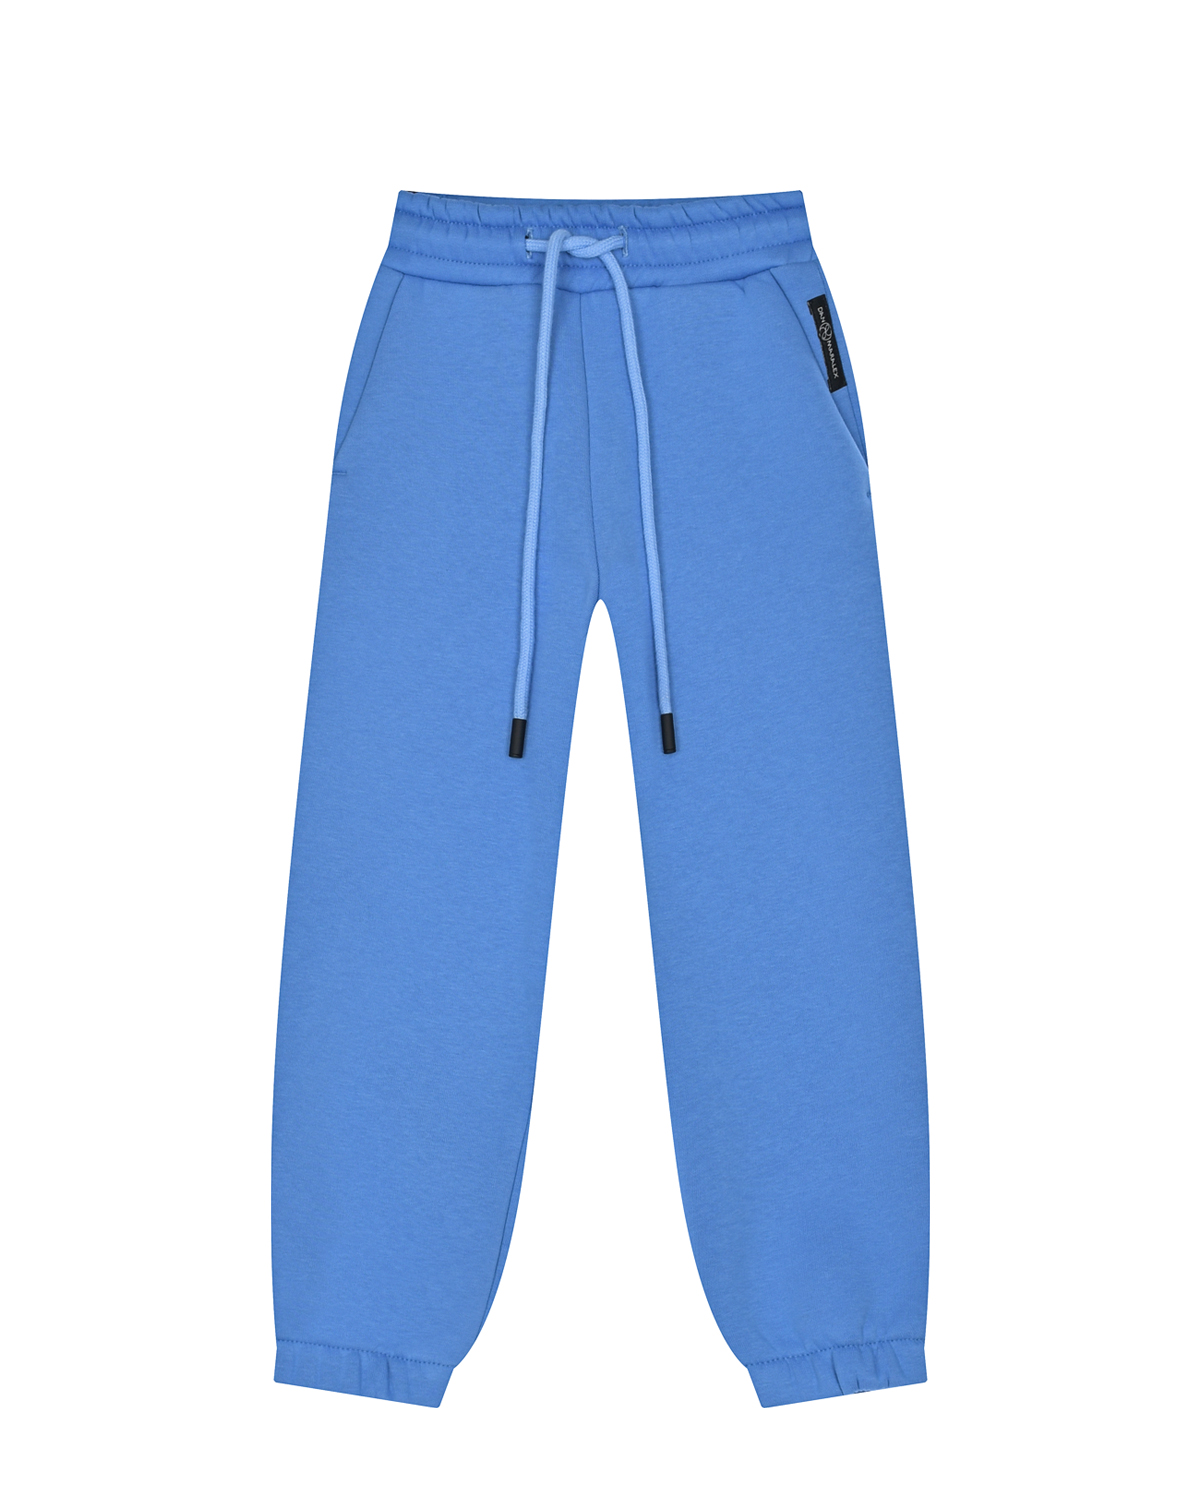 Голубые спортивные брюки из футера Dan Maralex детские, размер 104, цвет голубой - фото 1